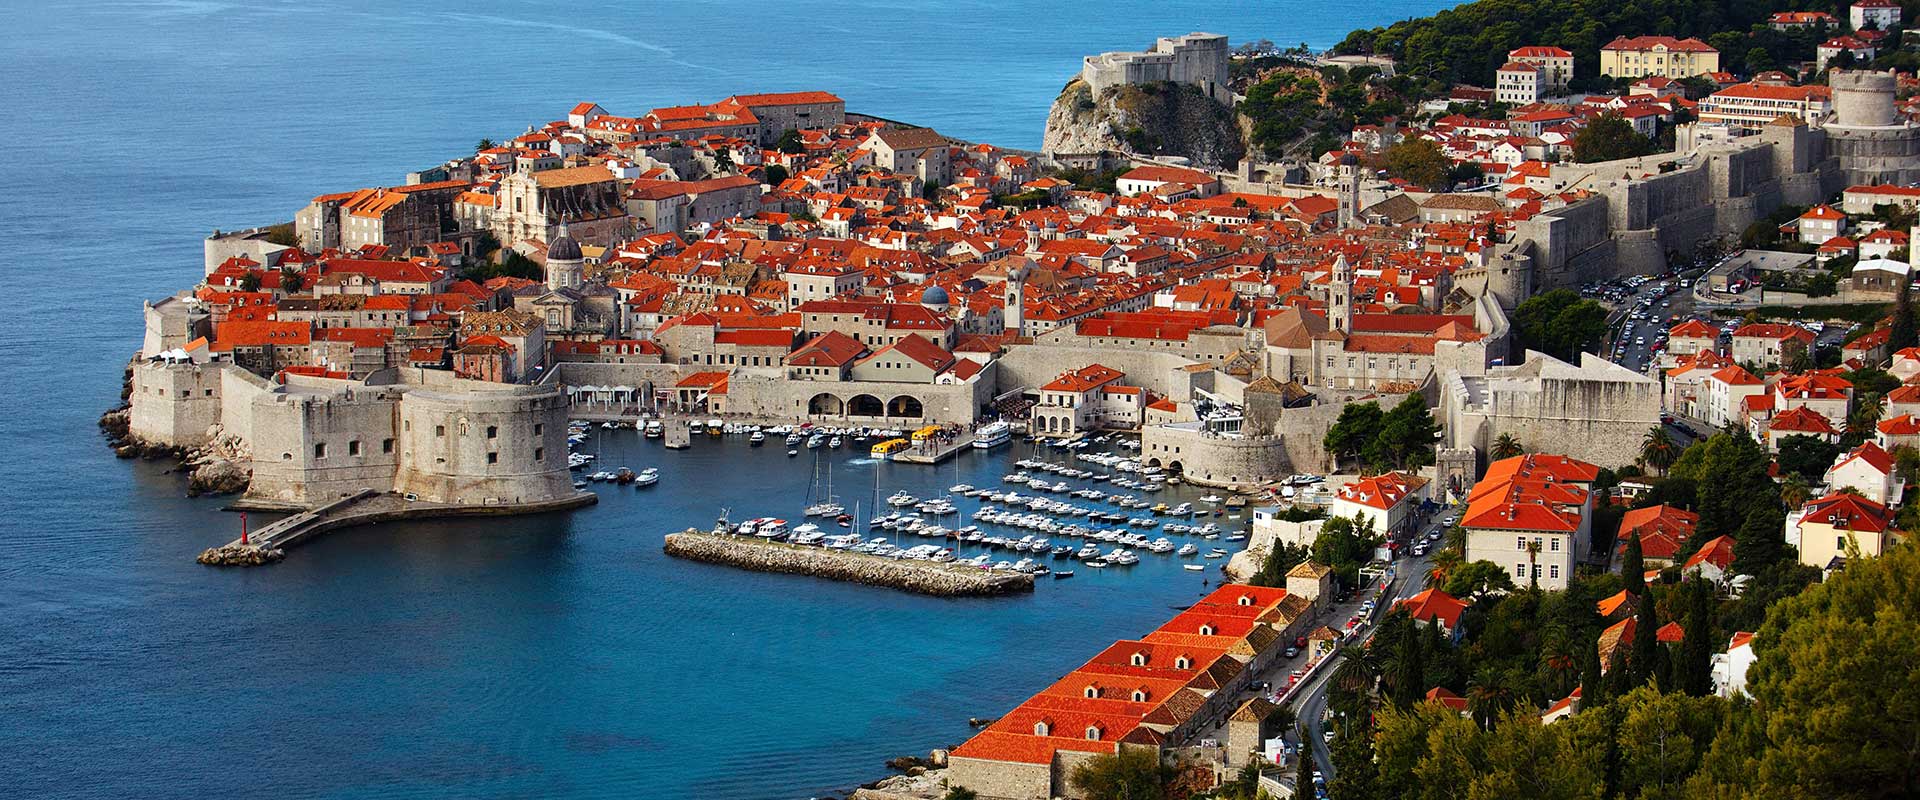 Ragusa (Dubrovnik)